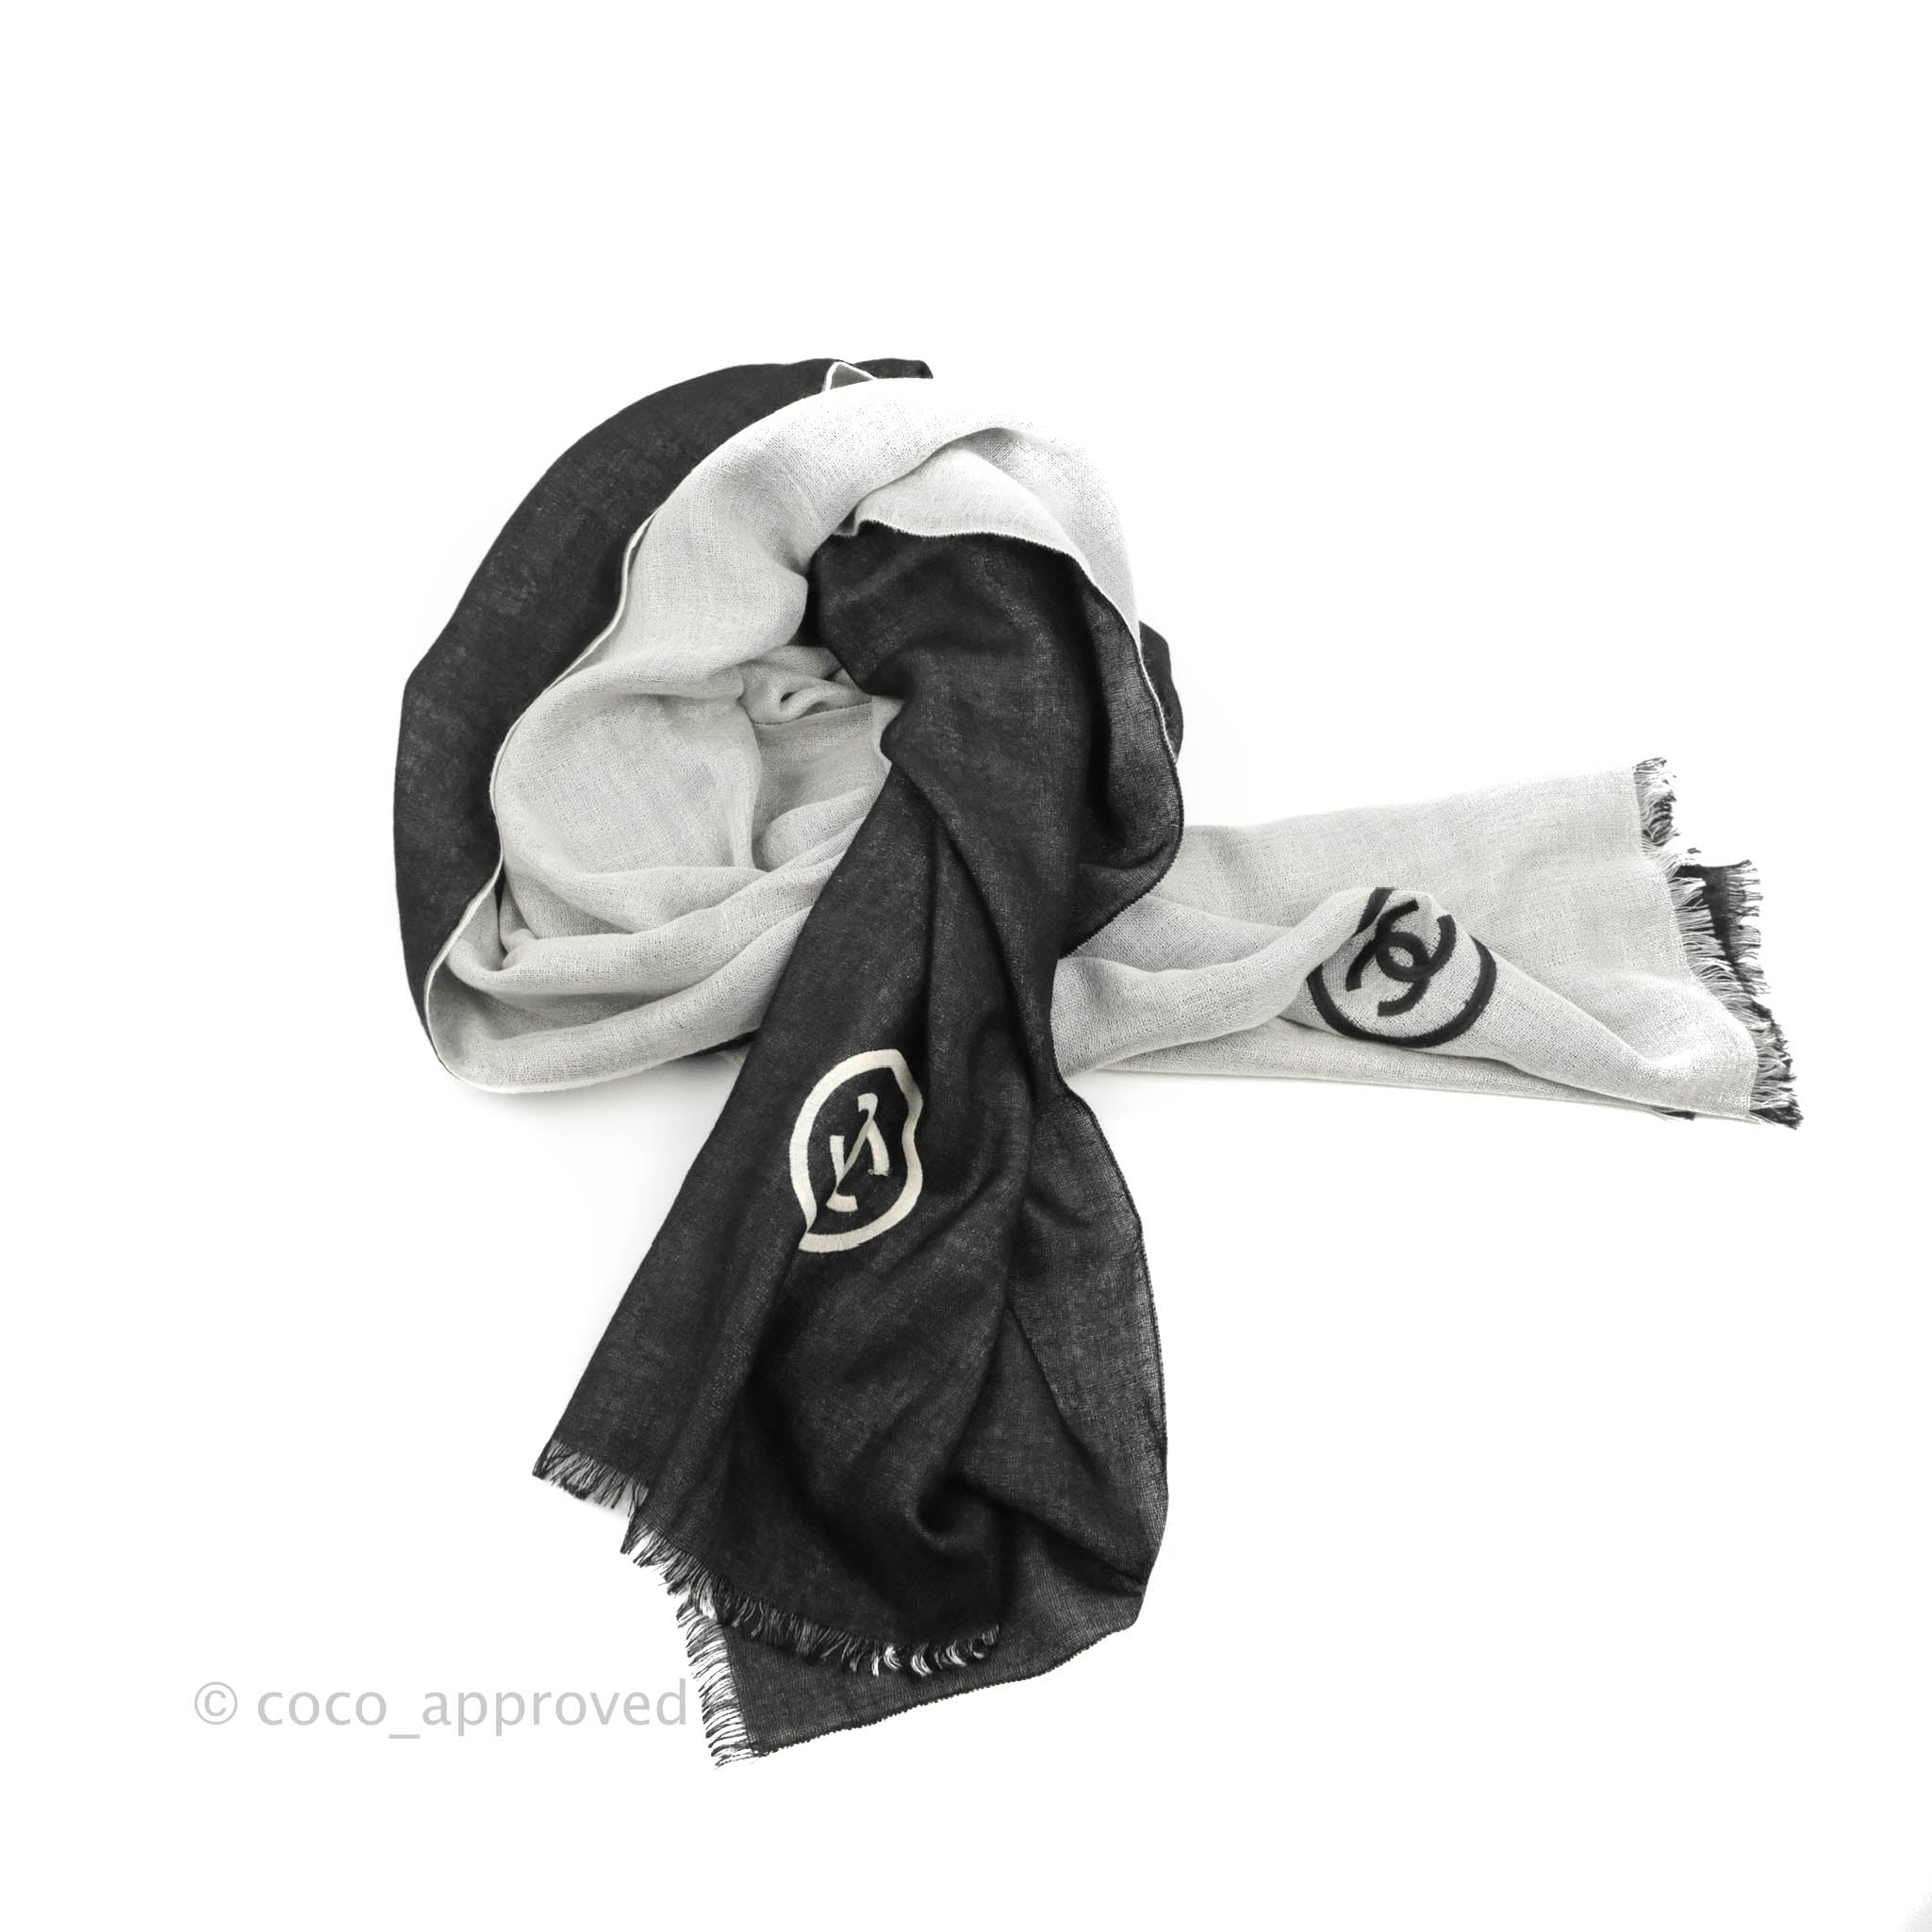 Silk maxi dress Chanel Black size 38 FR in Silk - 25957724